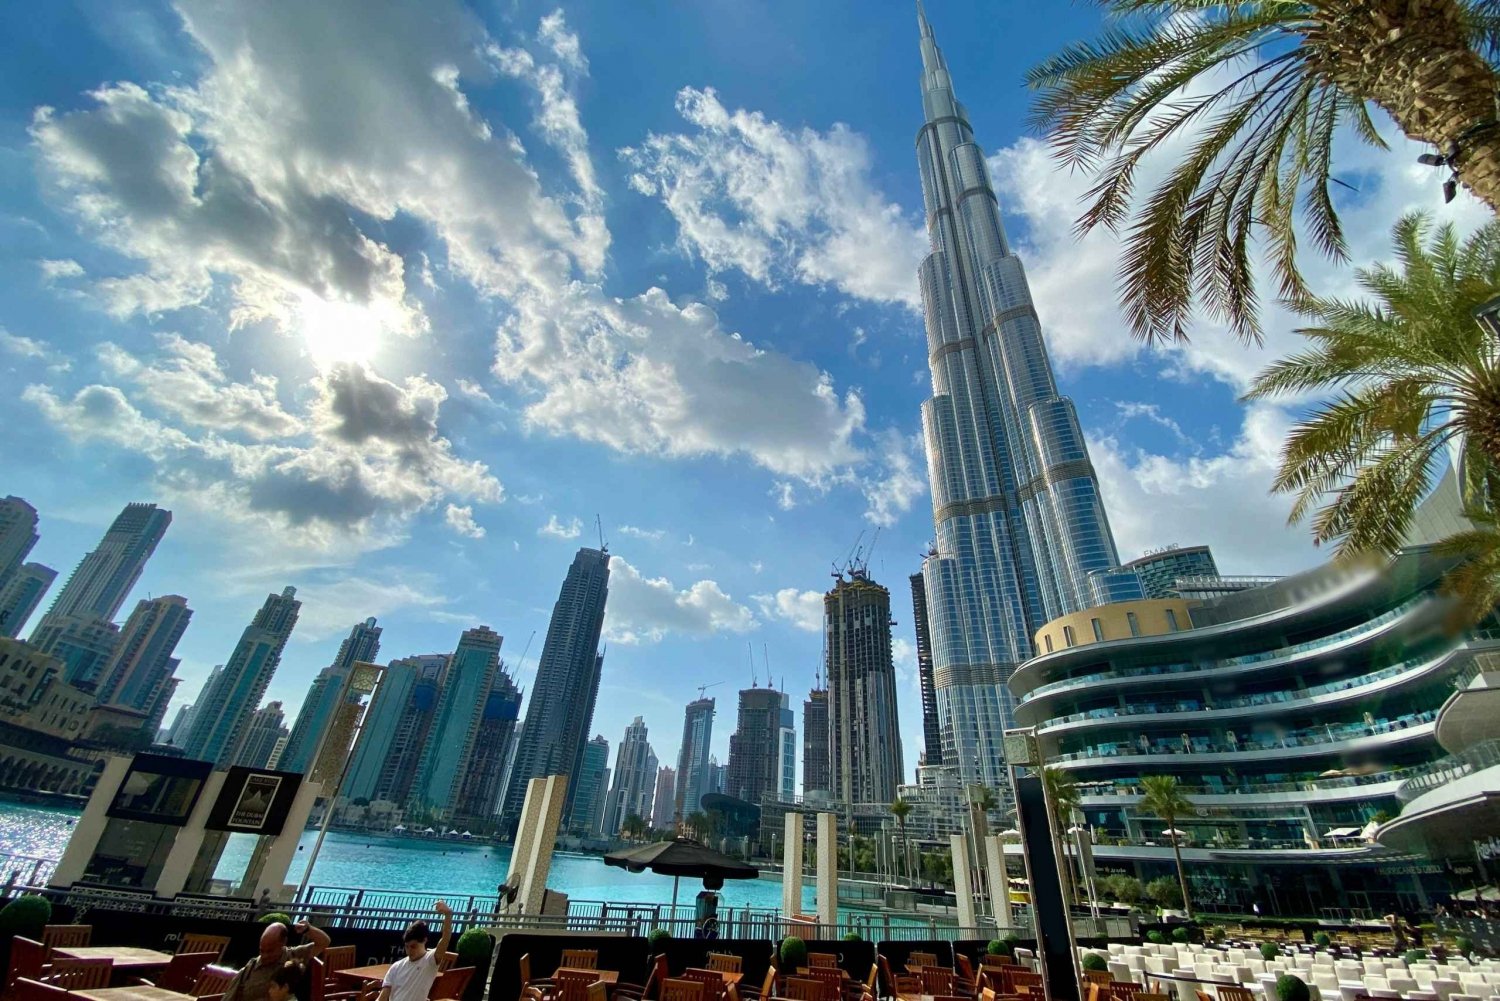 Dubai kokopäiväinen kiertoajelu Ras Al Khaimahista ostosajalla